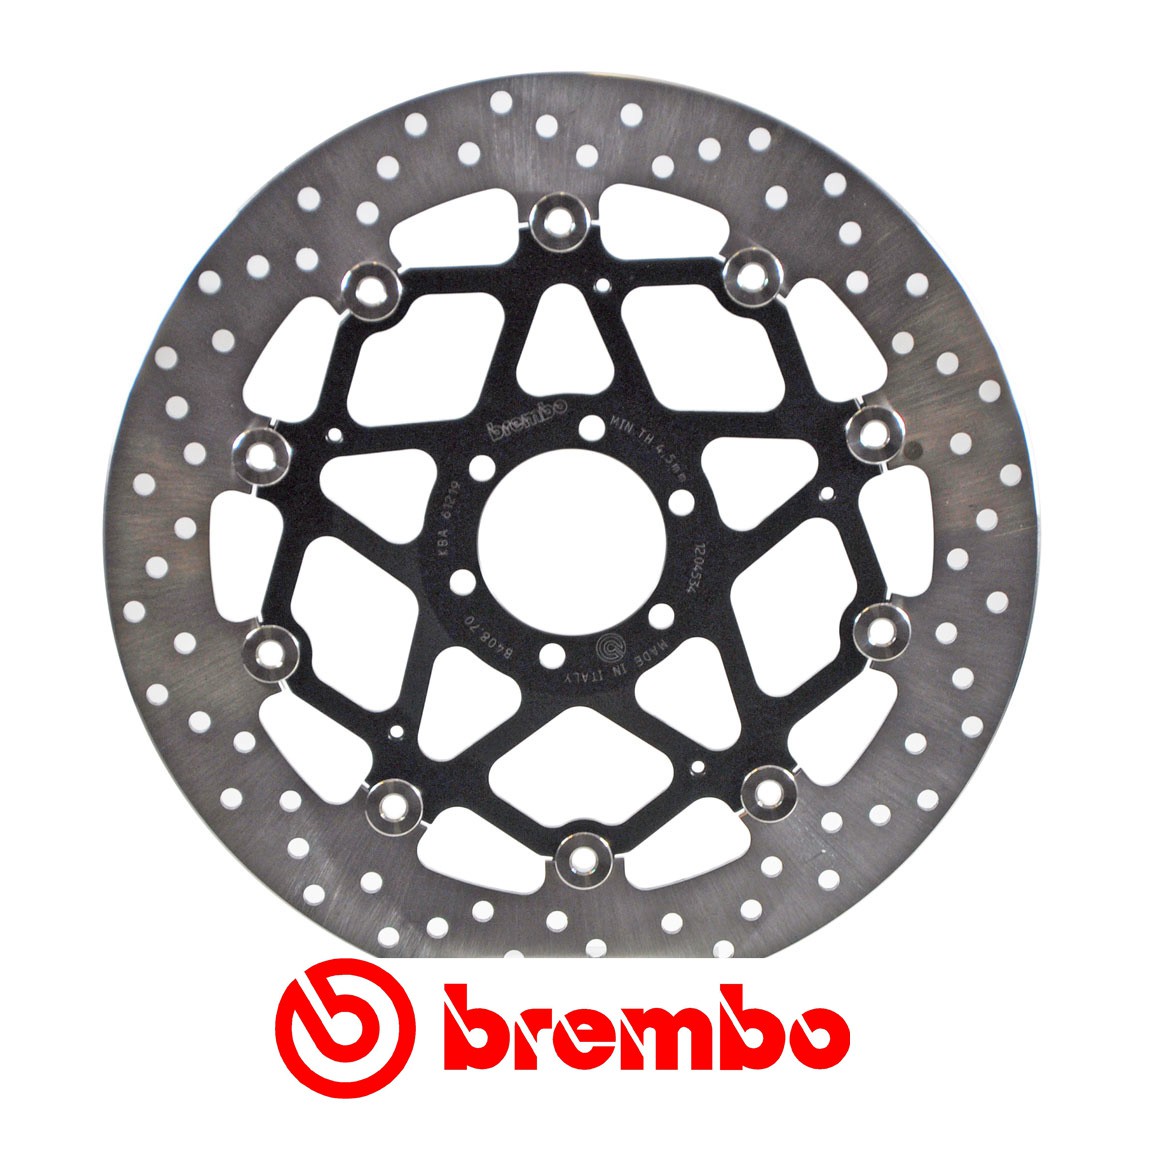 Disque de frein avant Brembo pour 650 Pegaso (05-09)